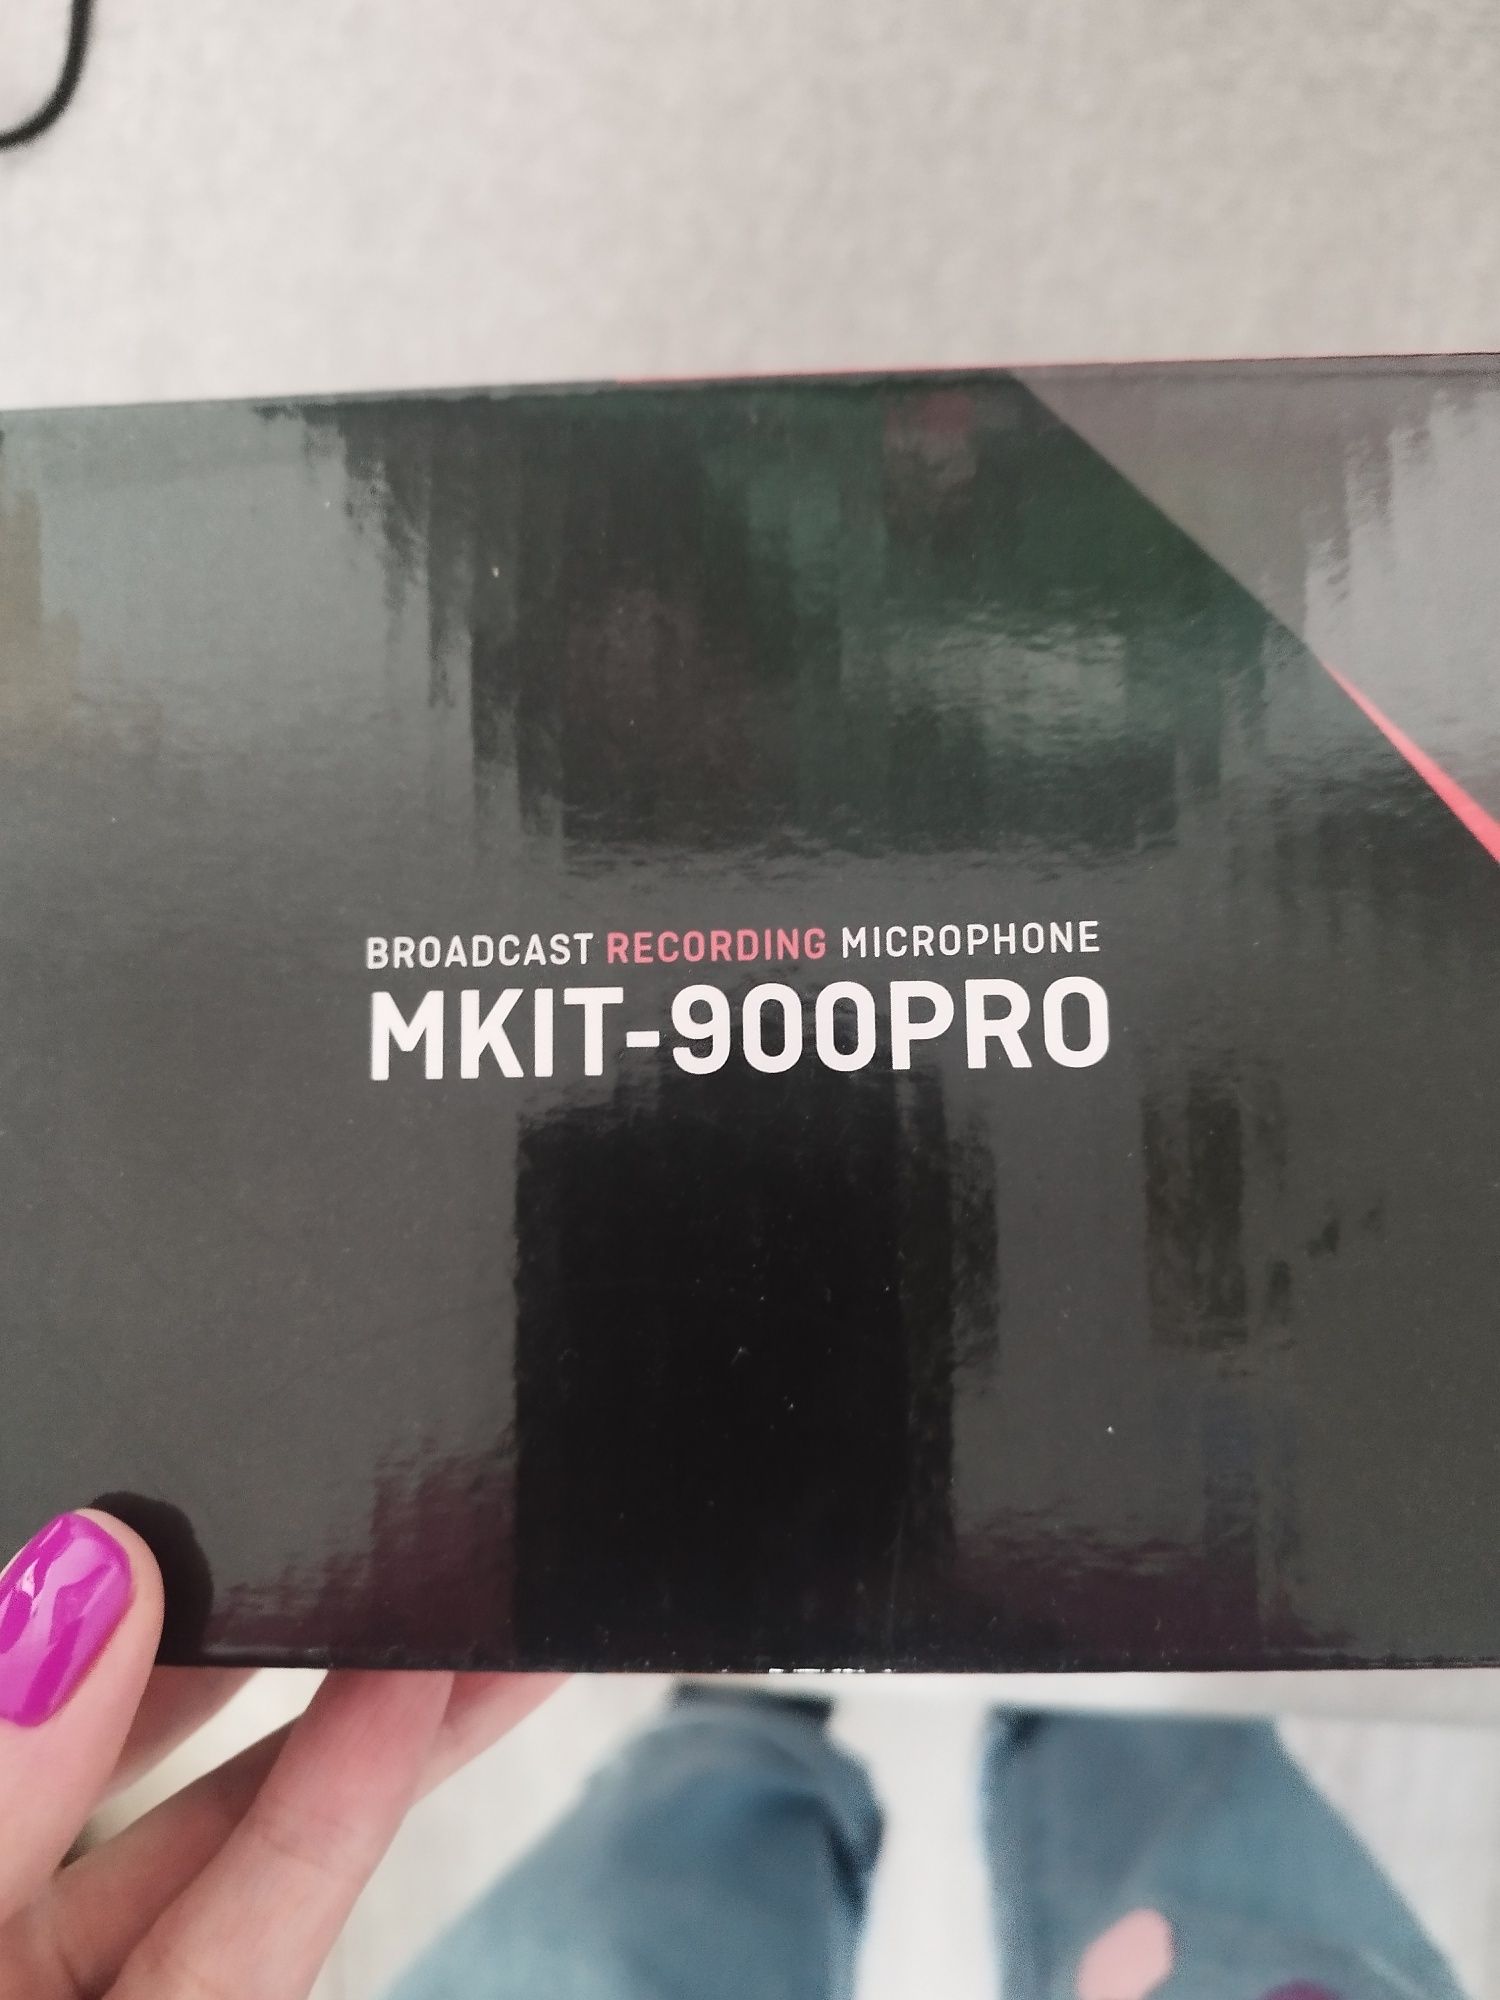 Mikrofon podkastowy gamingowy MOZOS MKIT-900PRO nowy!